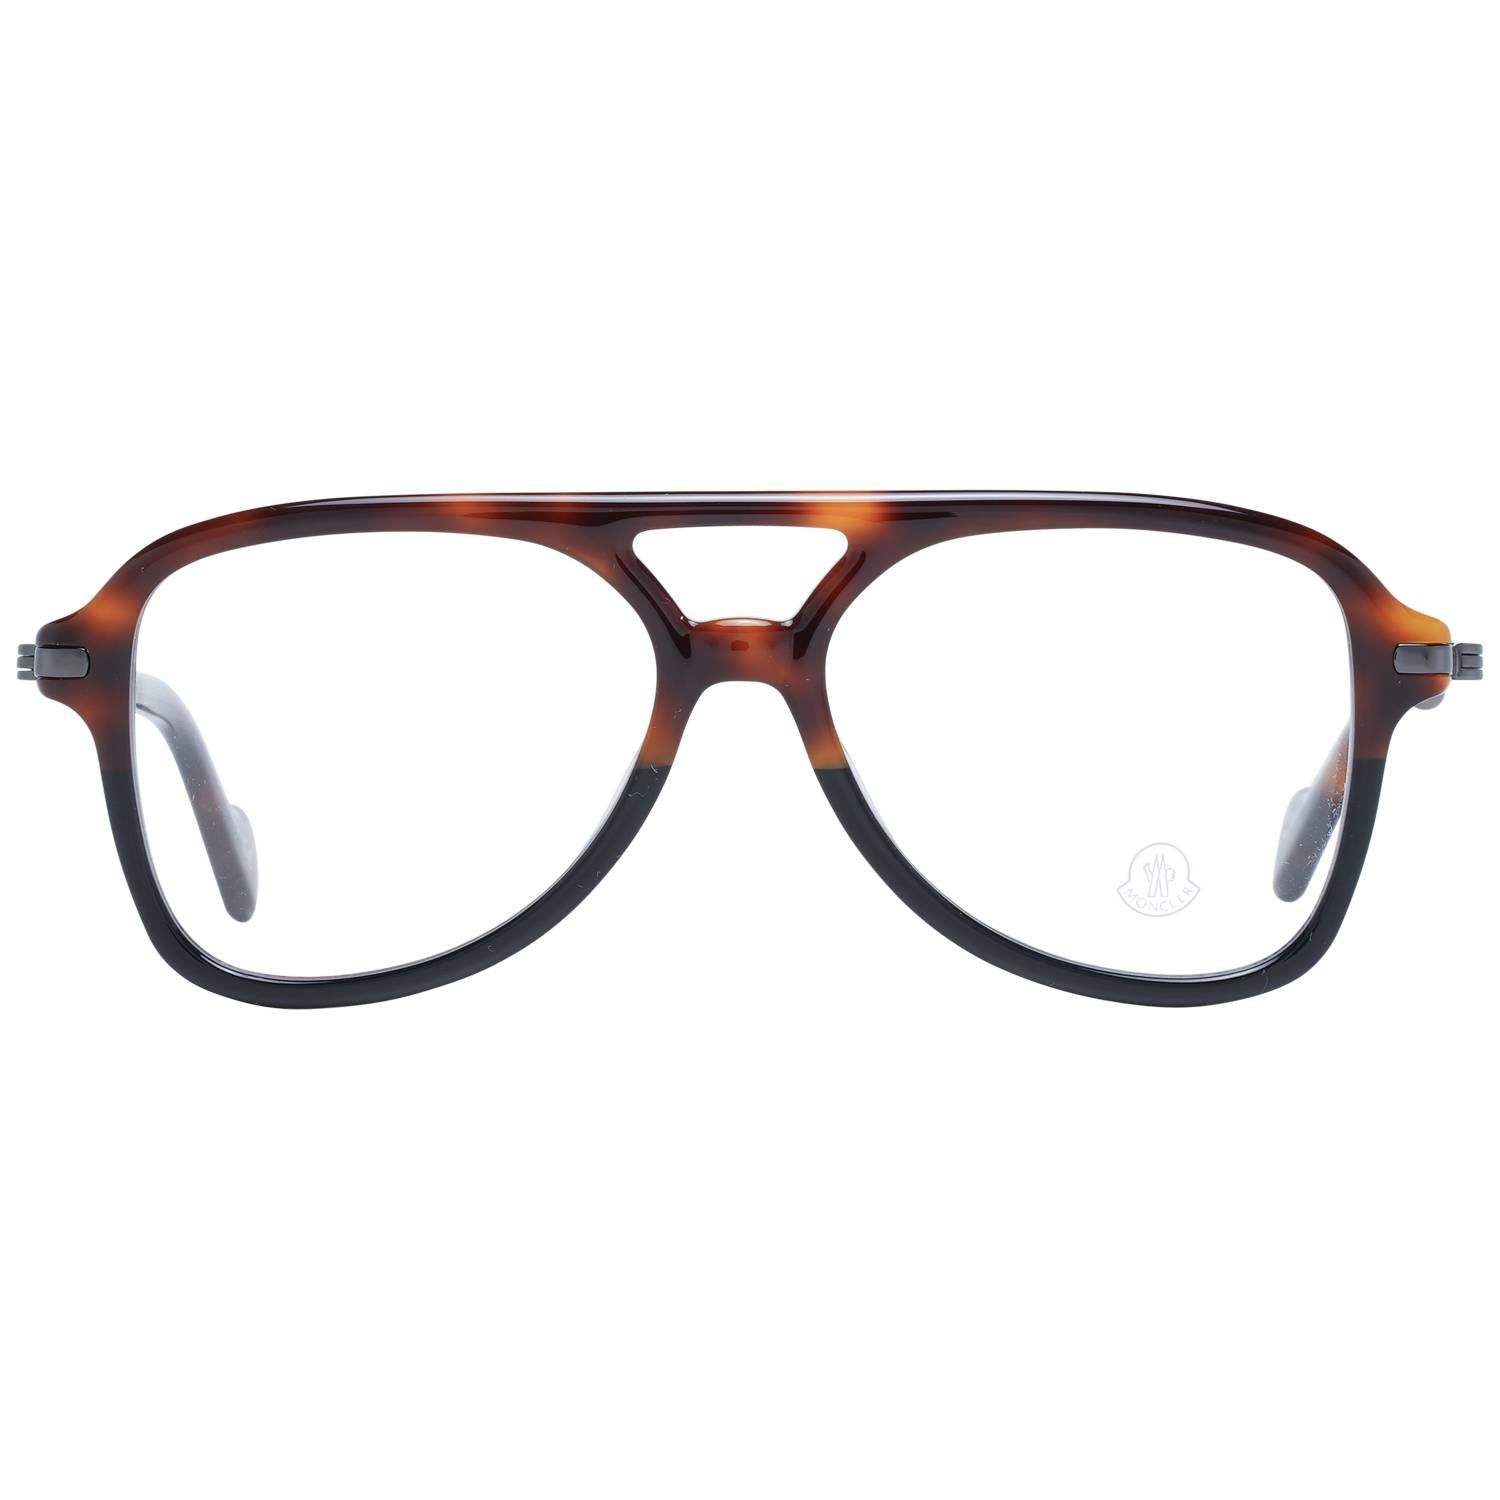 Moncler Eyeglasses Moncler Glasses Frames ML5081 056 56mm Eyeglasses Eyewear UK USA Australia 